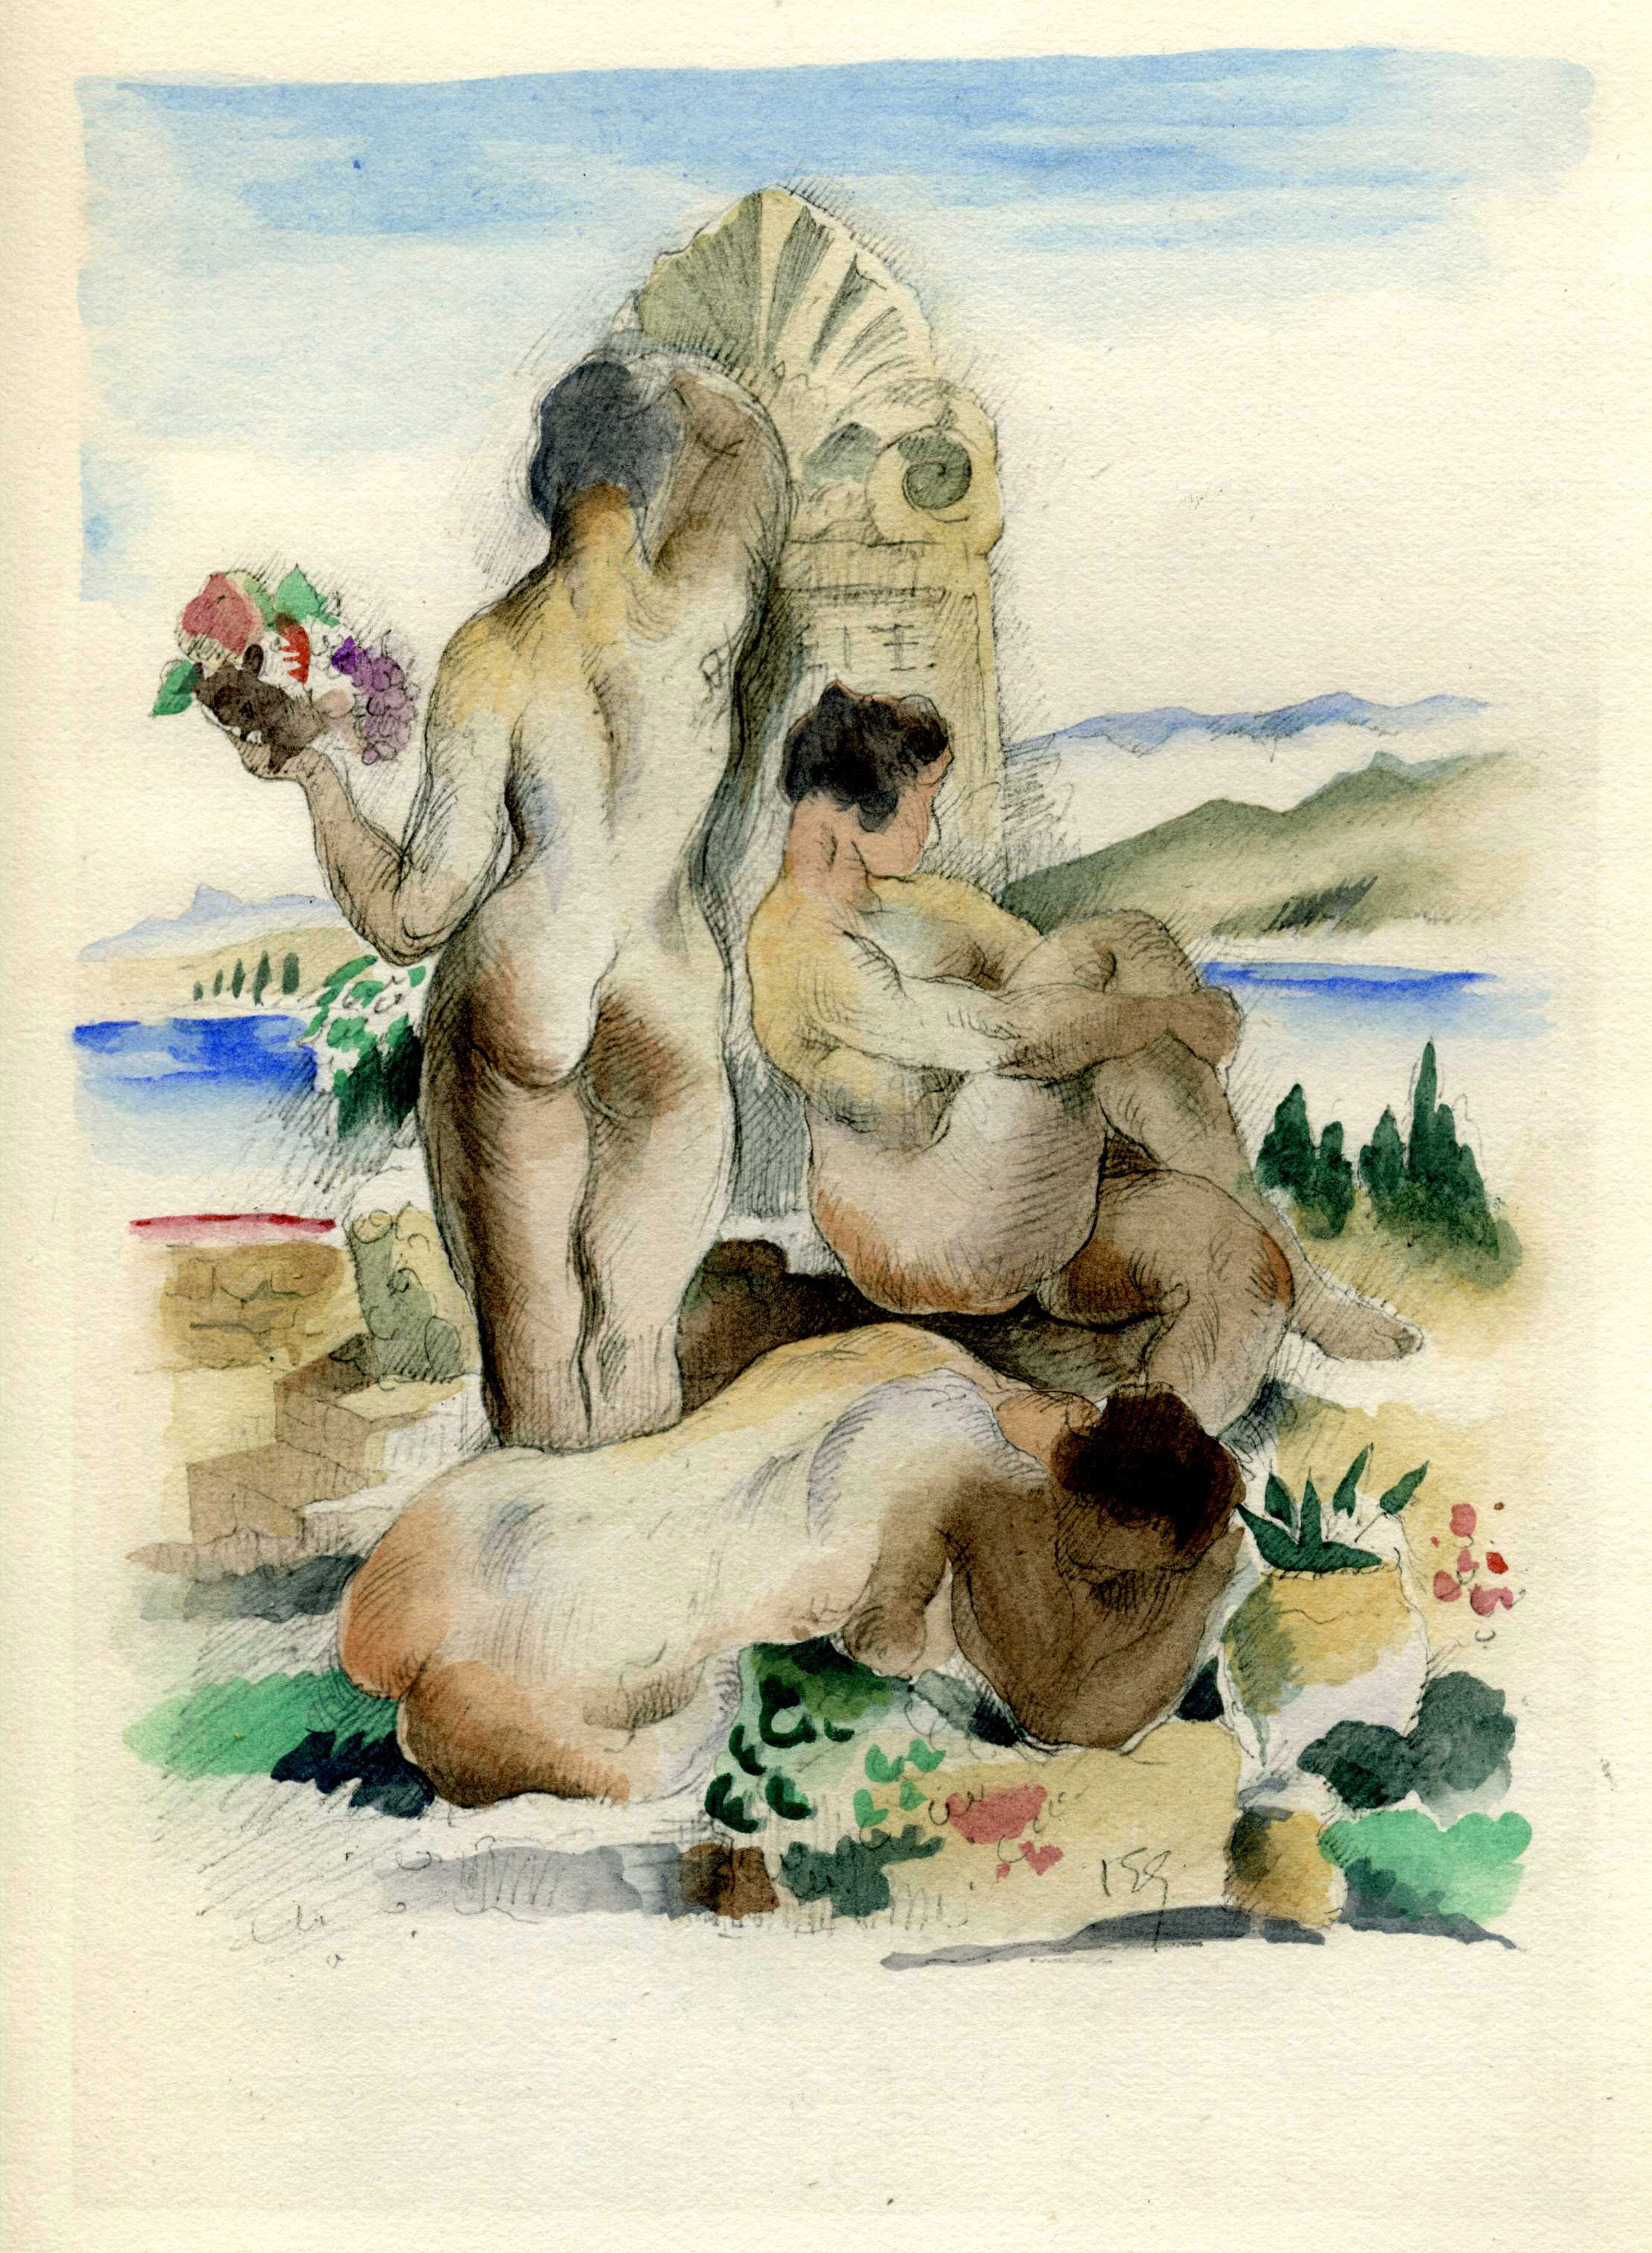 Aquarelle de Gernez pour l'édition de luxe du Chemin de Paradis en 1927